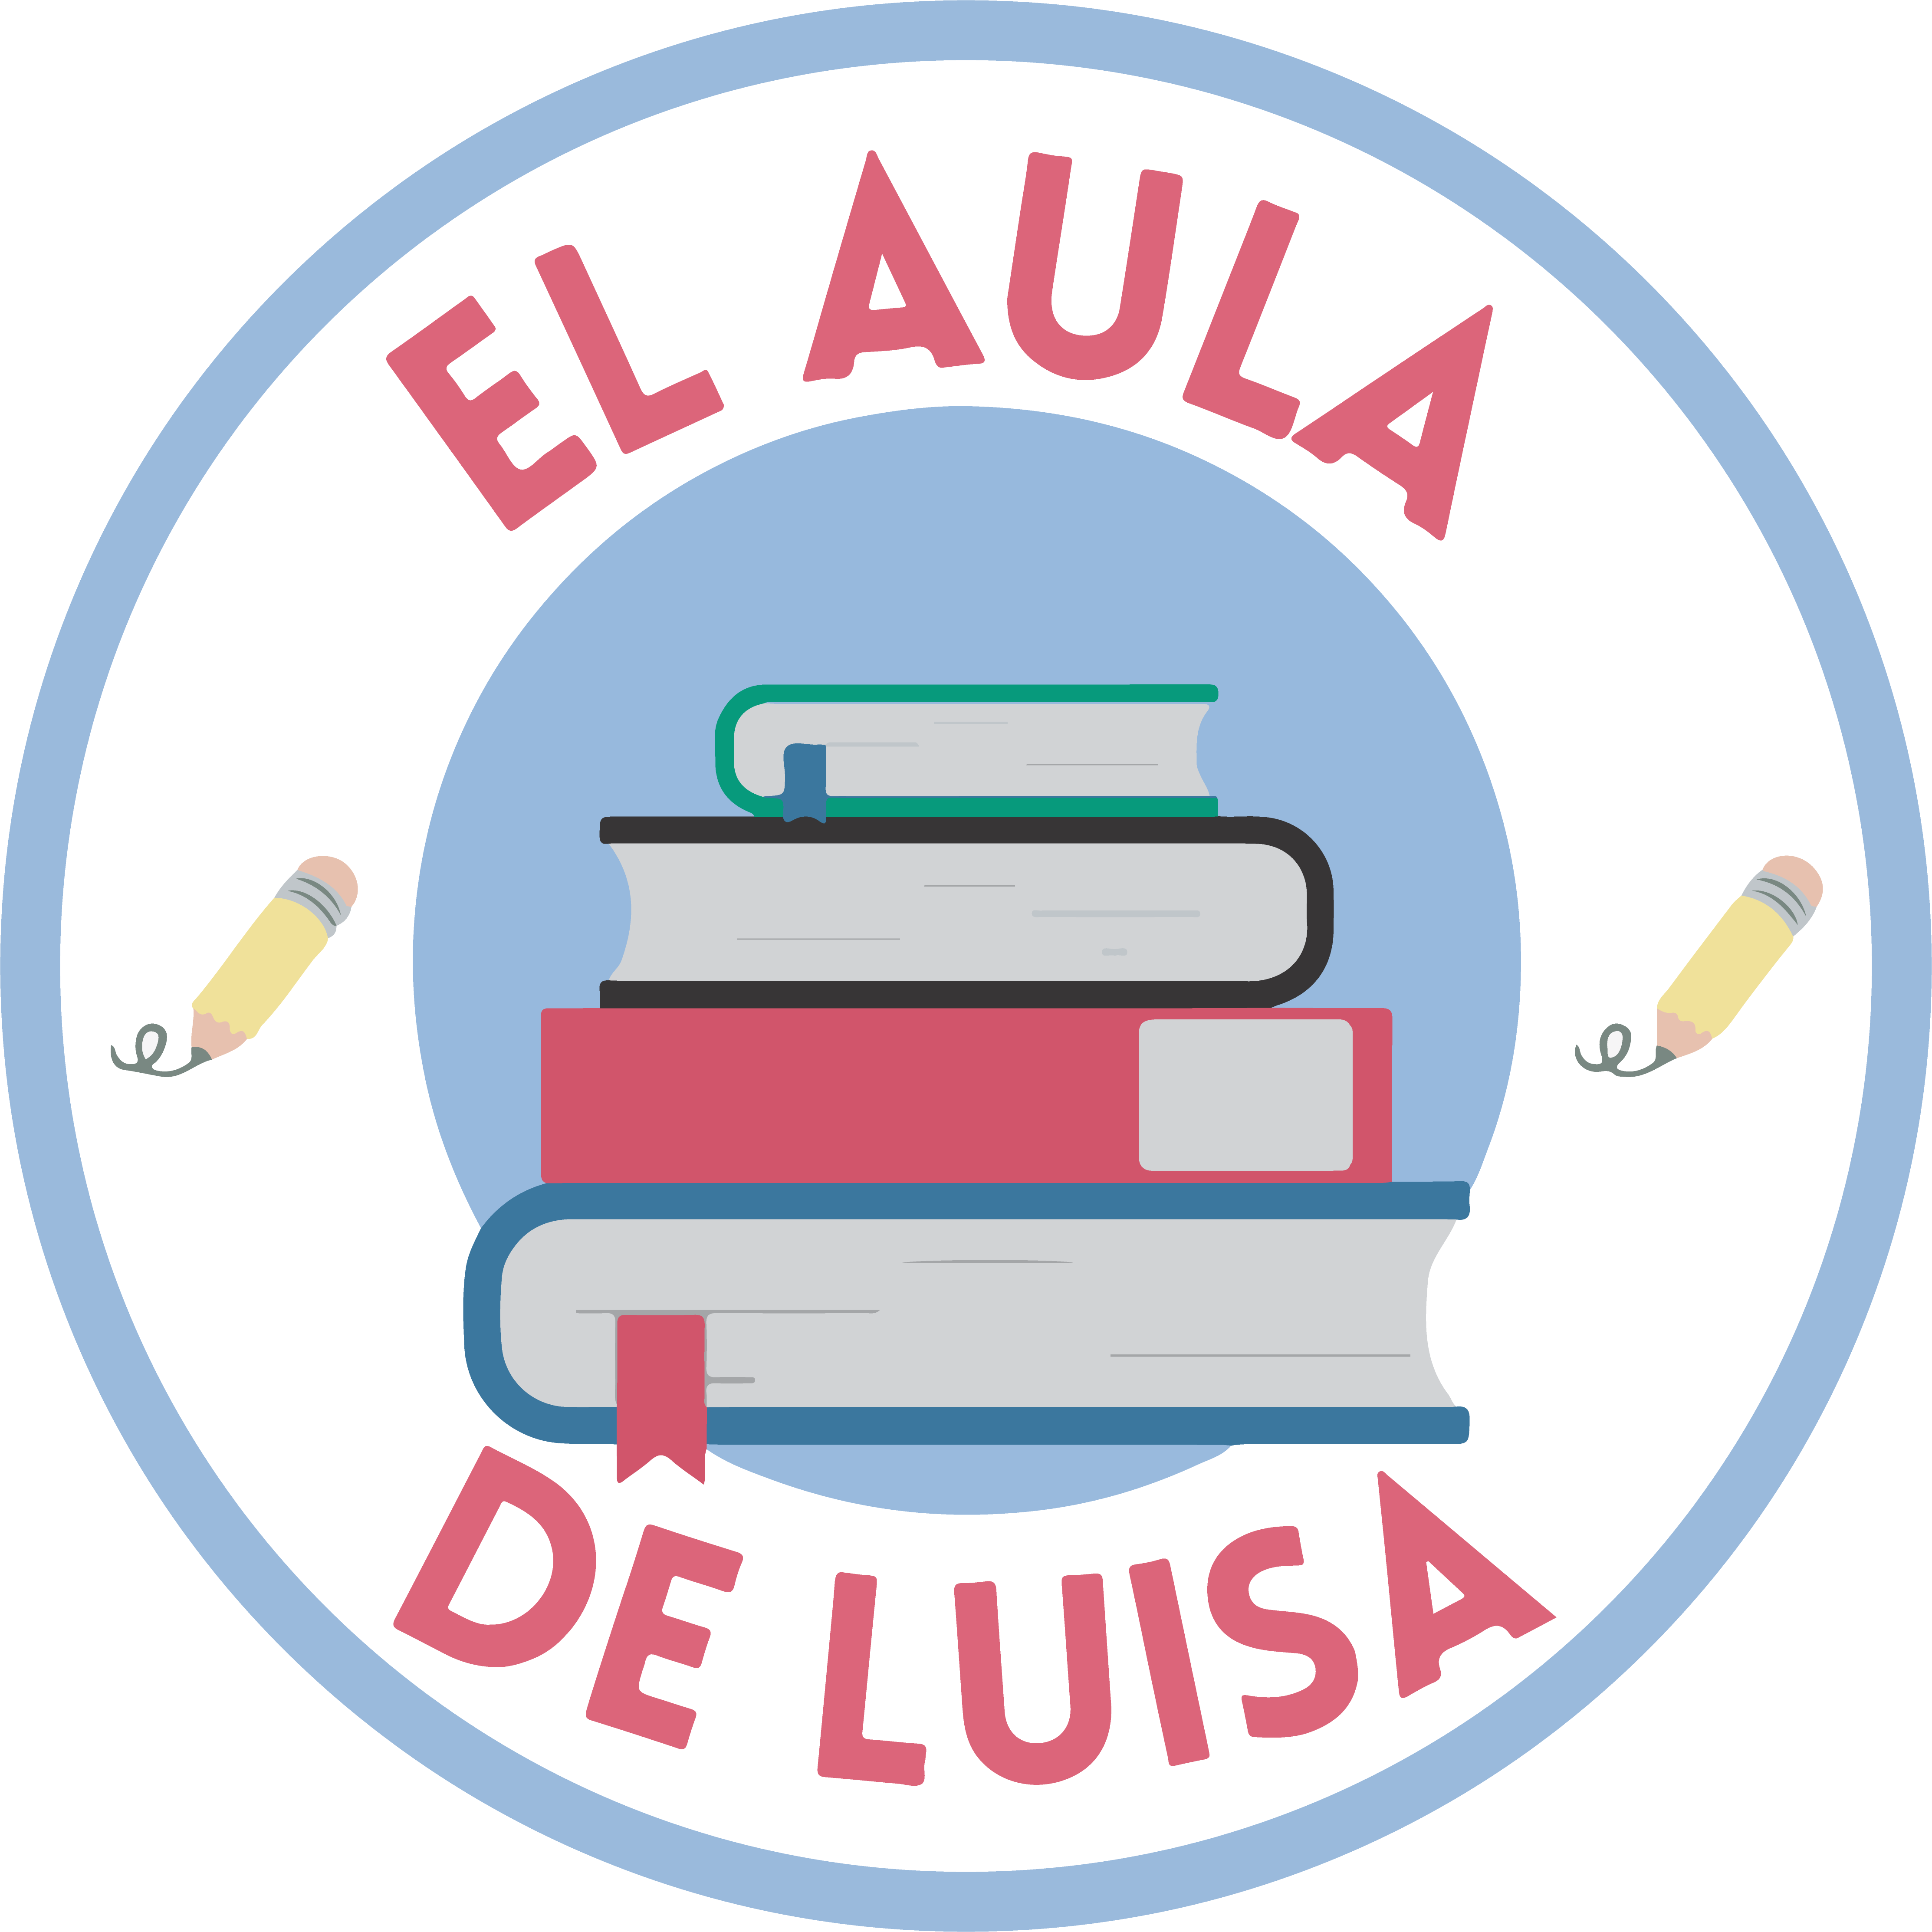 logotipo el aula de luisa png